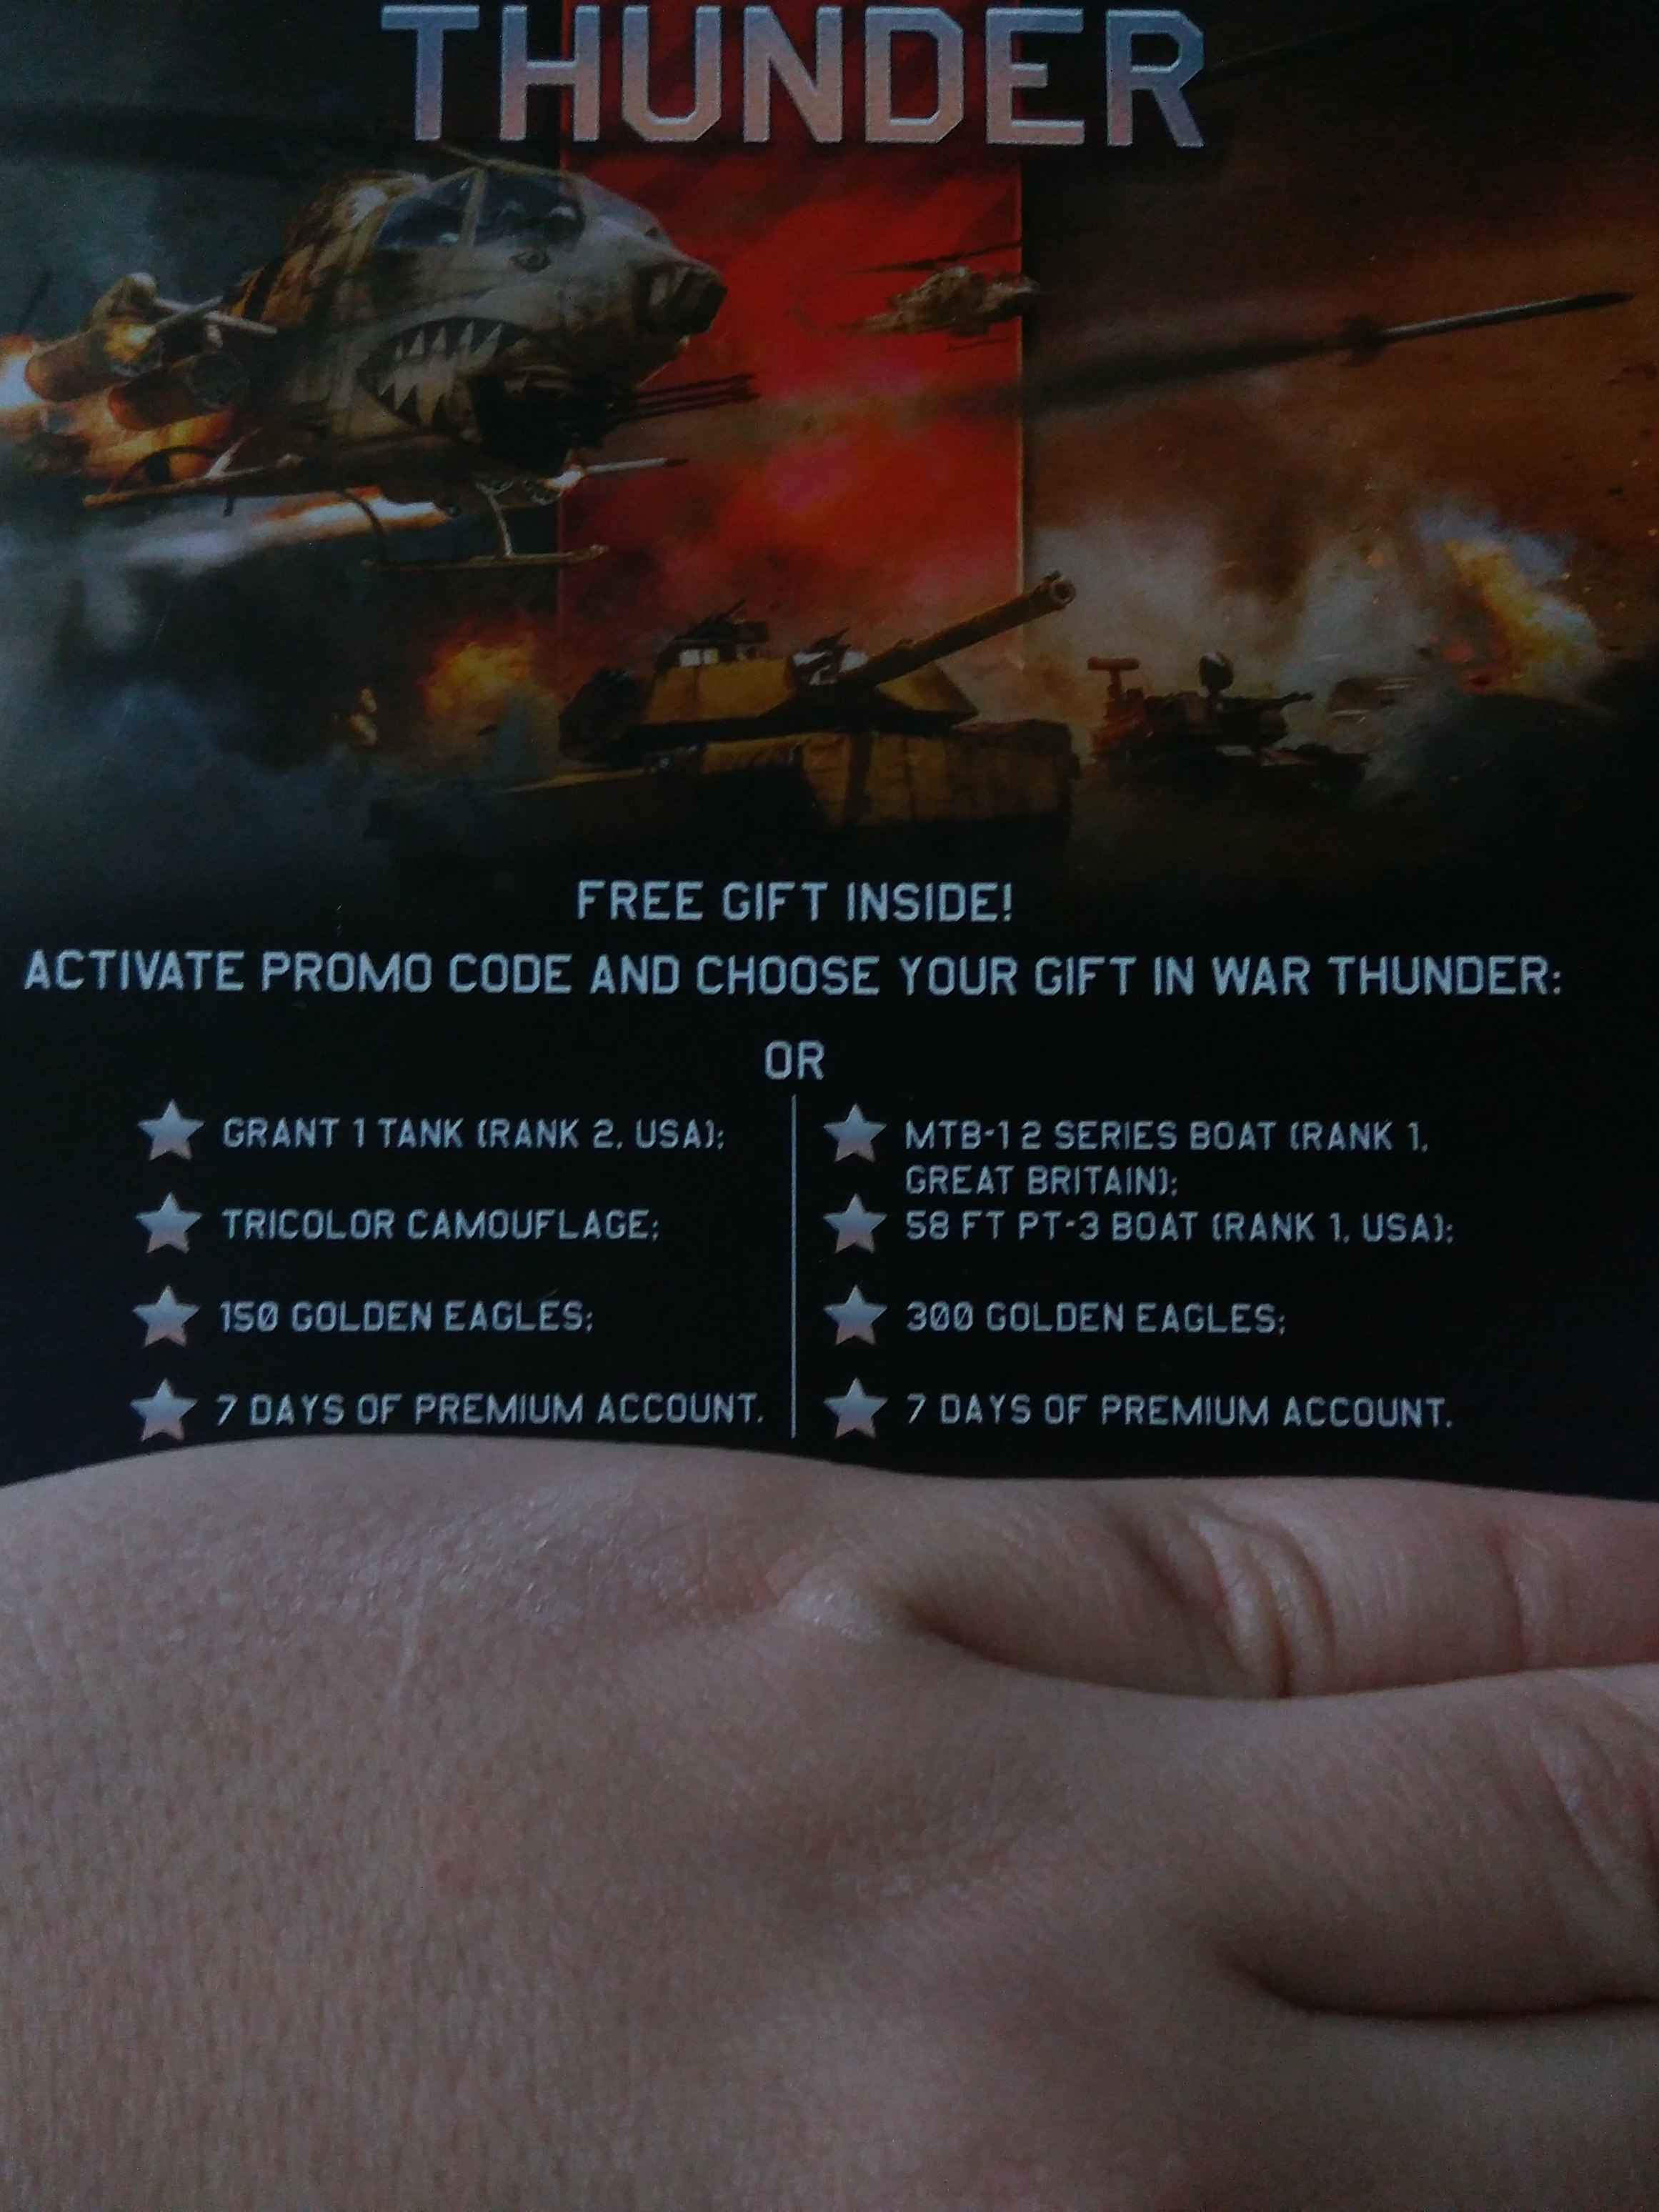 продажа предметов, вещей бонус код вартандер - Бонус-коды в War Thunder